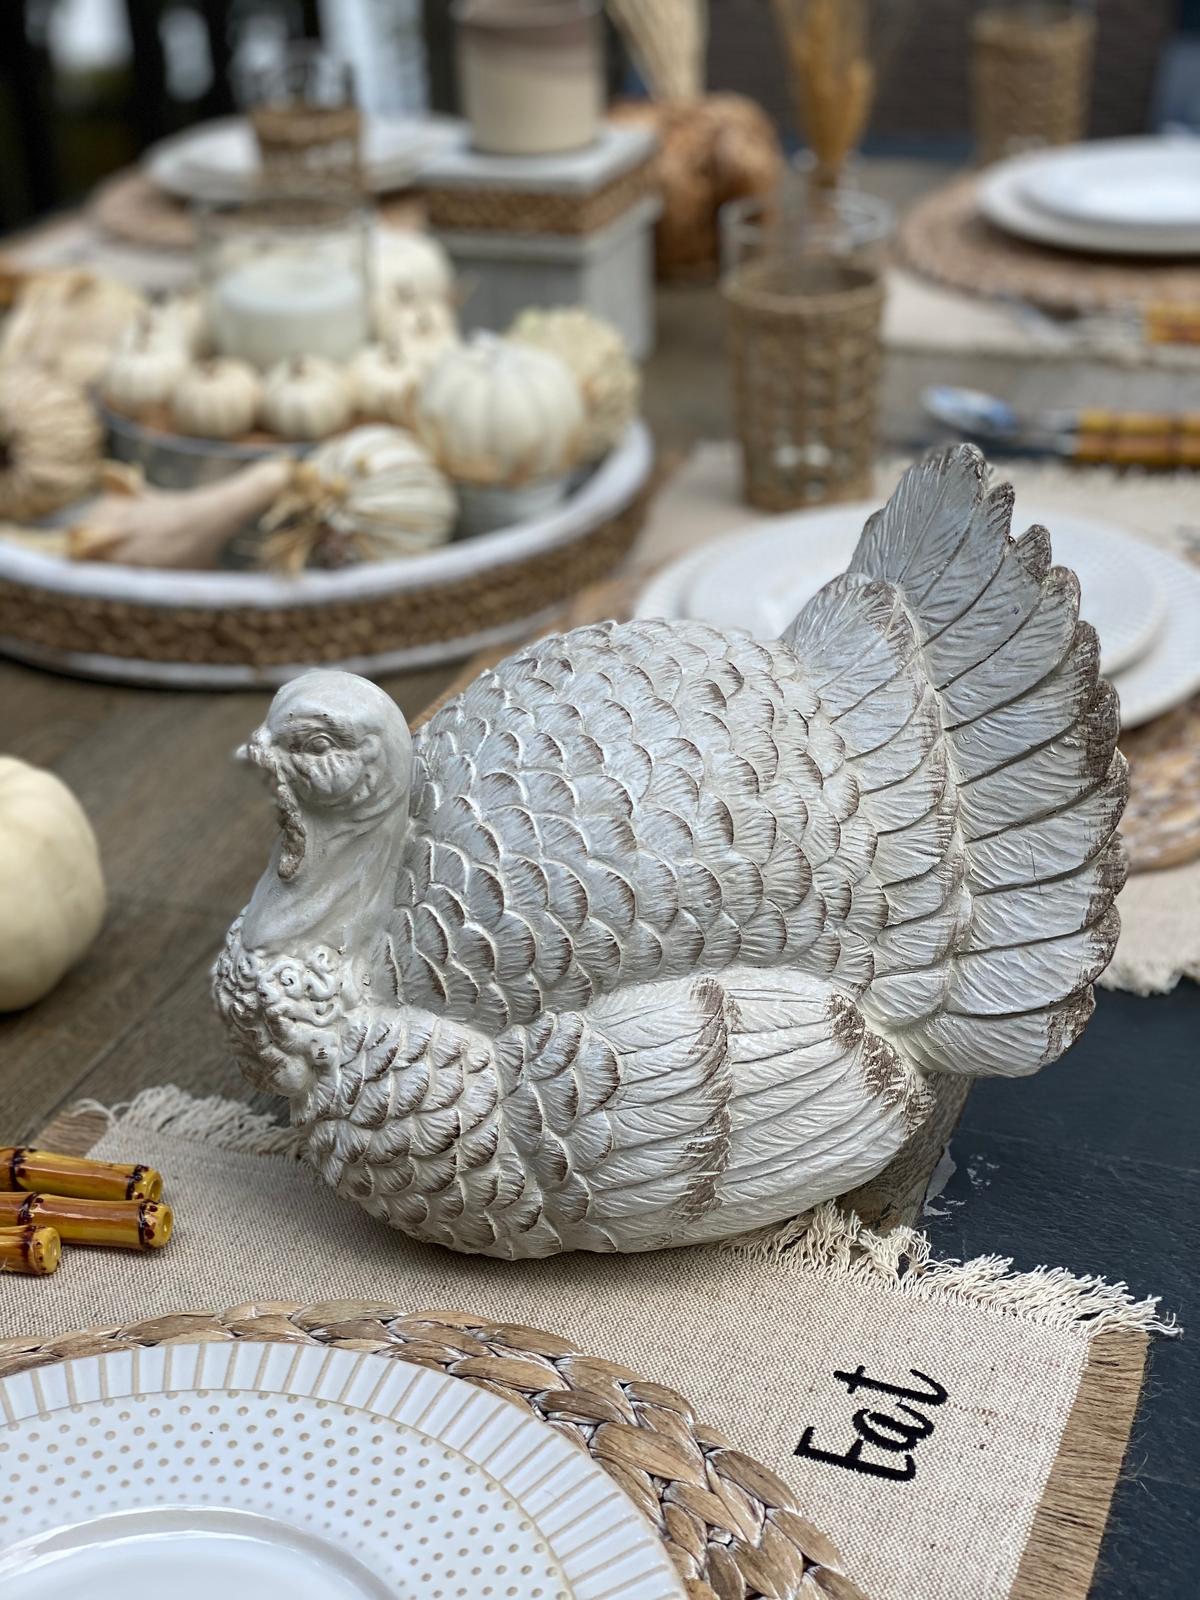 The turkey decoration centerpiece. (Courtesy of Yelena Oleynik)